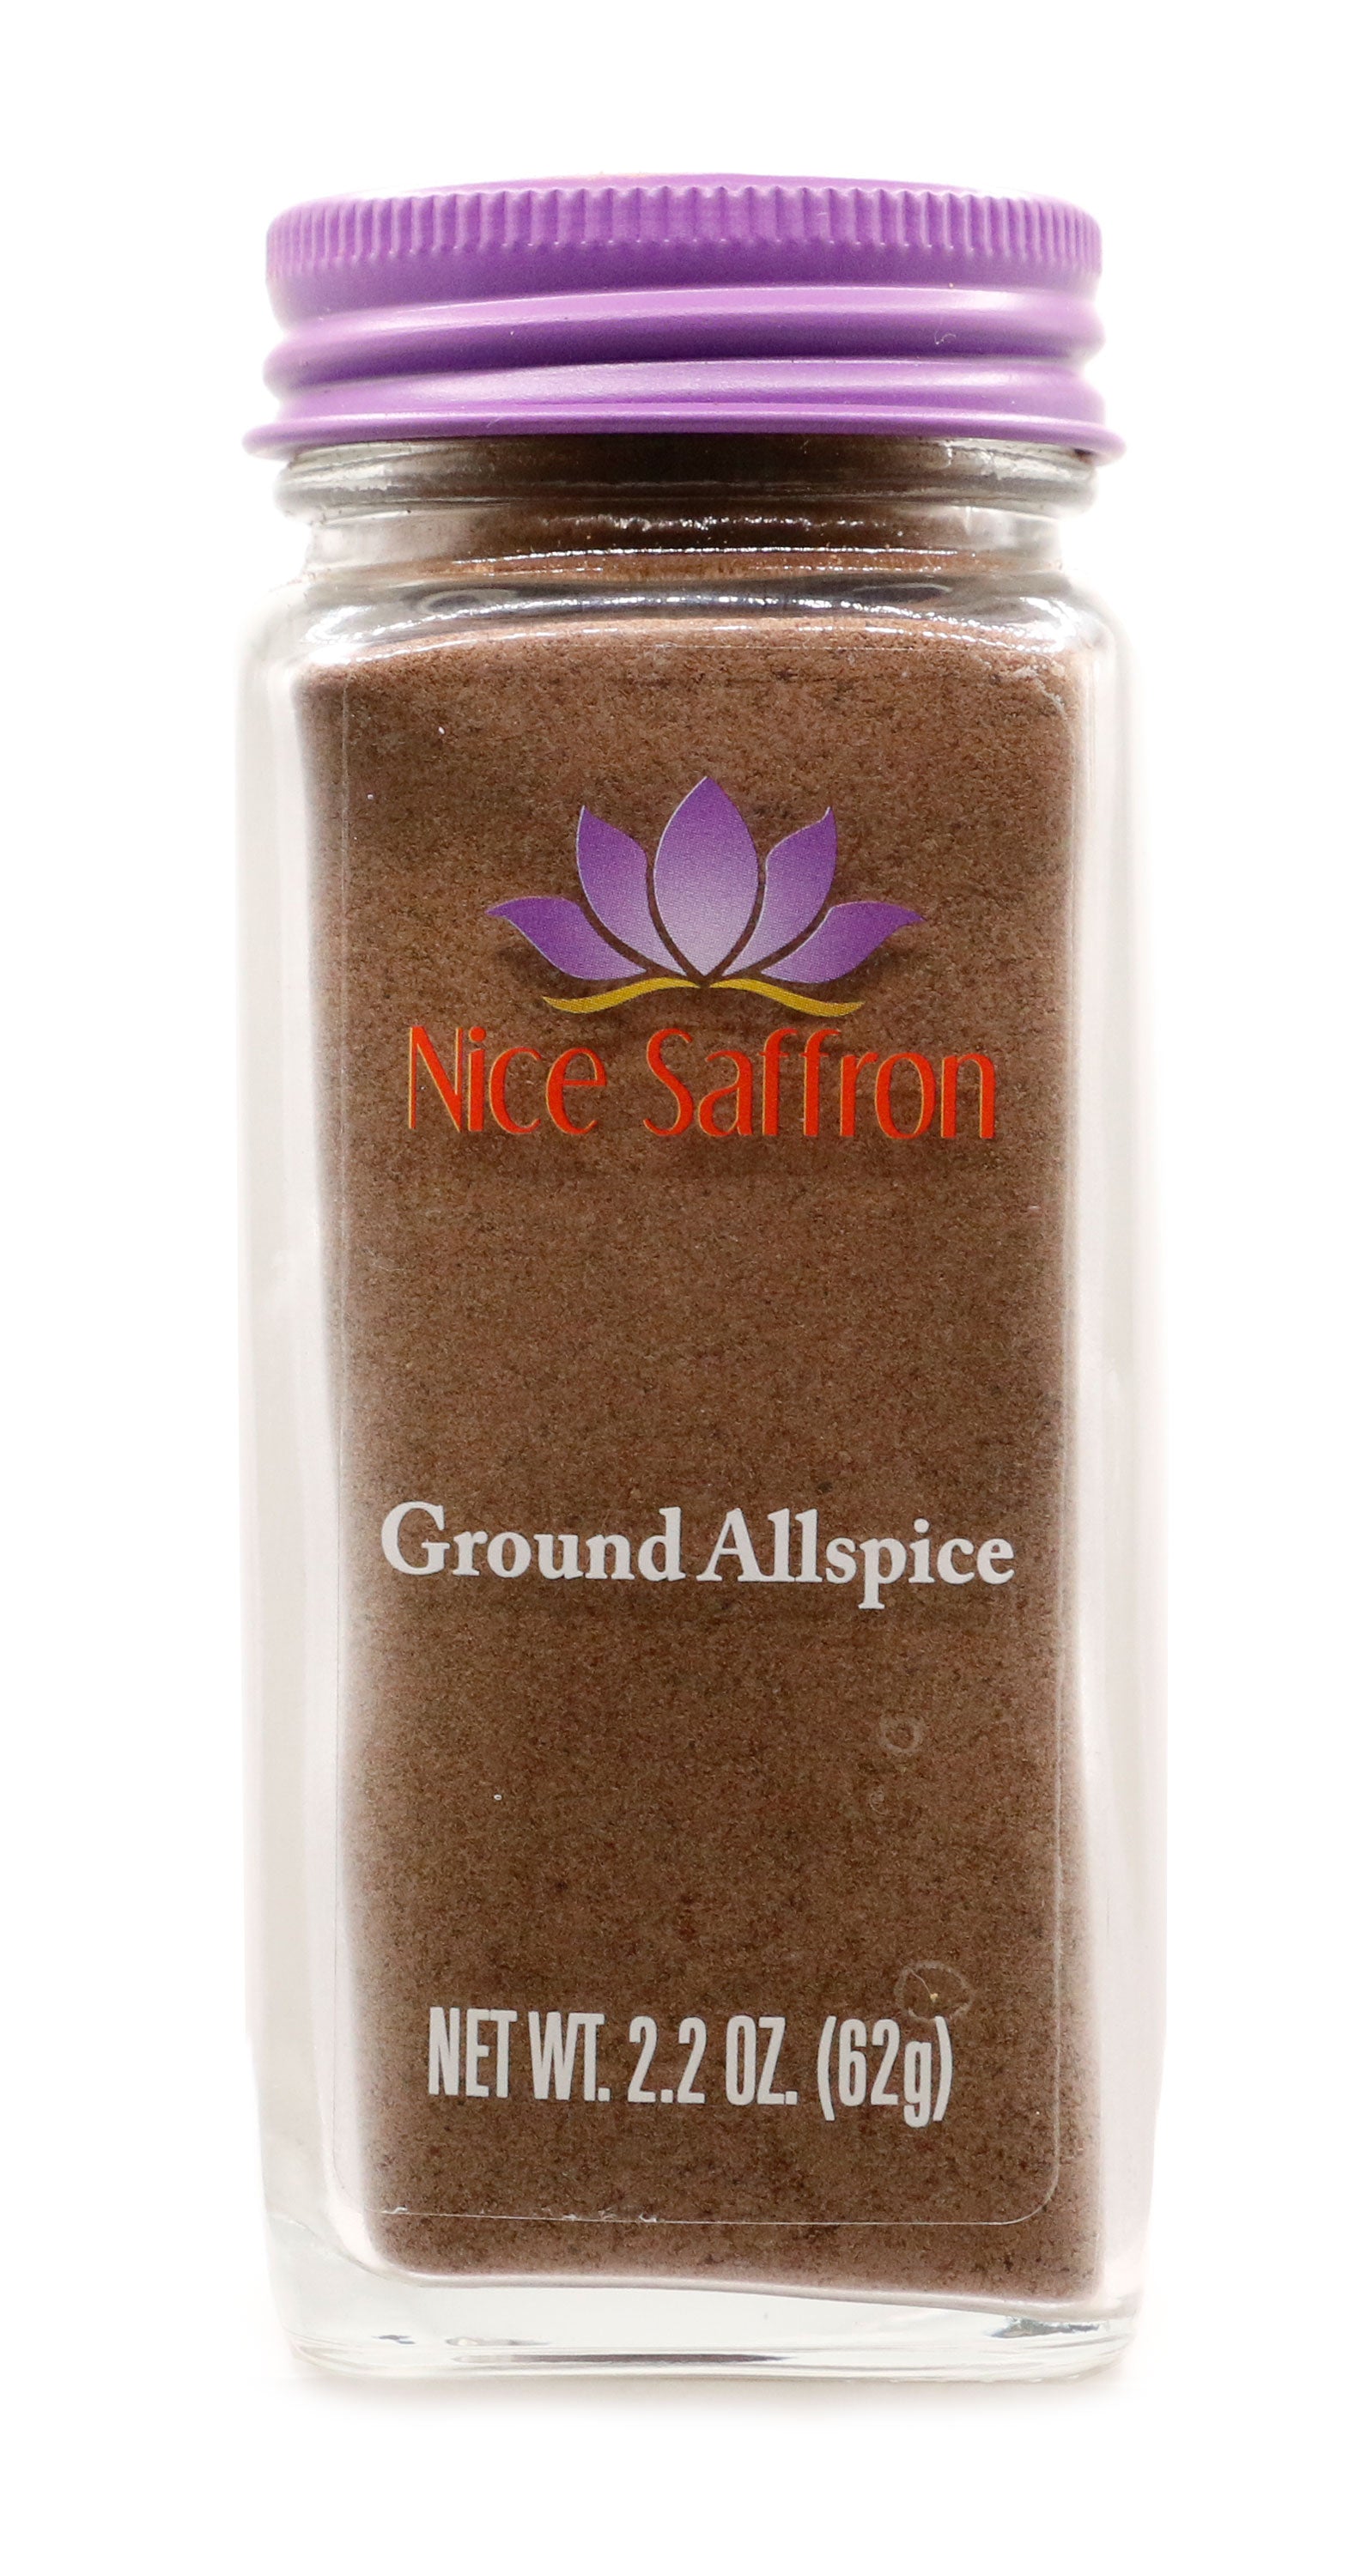 Ground Allspice – Nice saffron